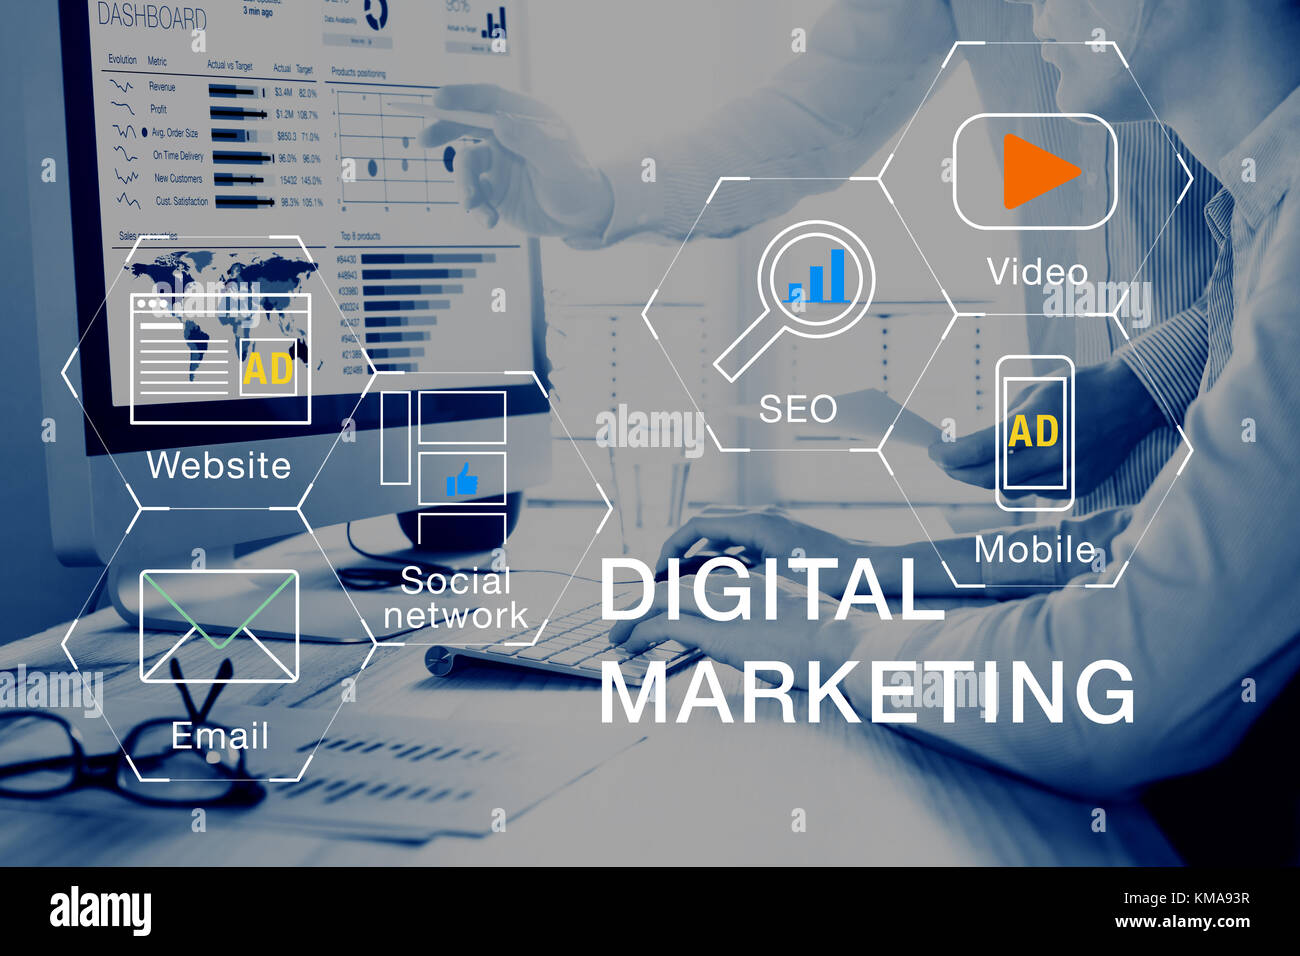 Concetto di digital marketing media (sito web ad, e-mail, rete sociale, seo, video mobile app) con icona e team analizzando il ritorno sugli investimenti (ROI Foto Stock